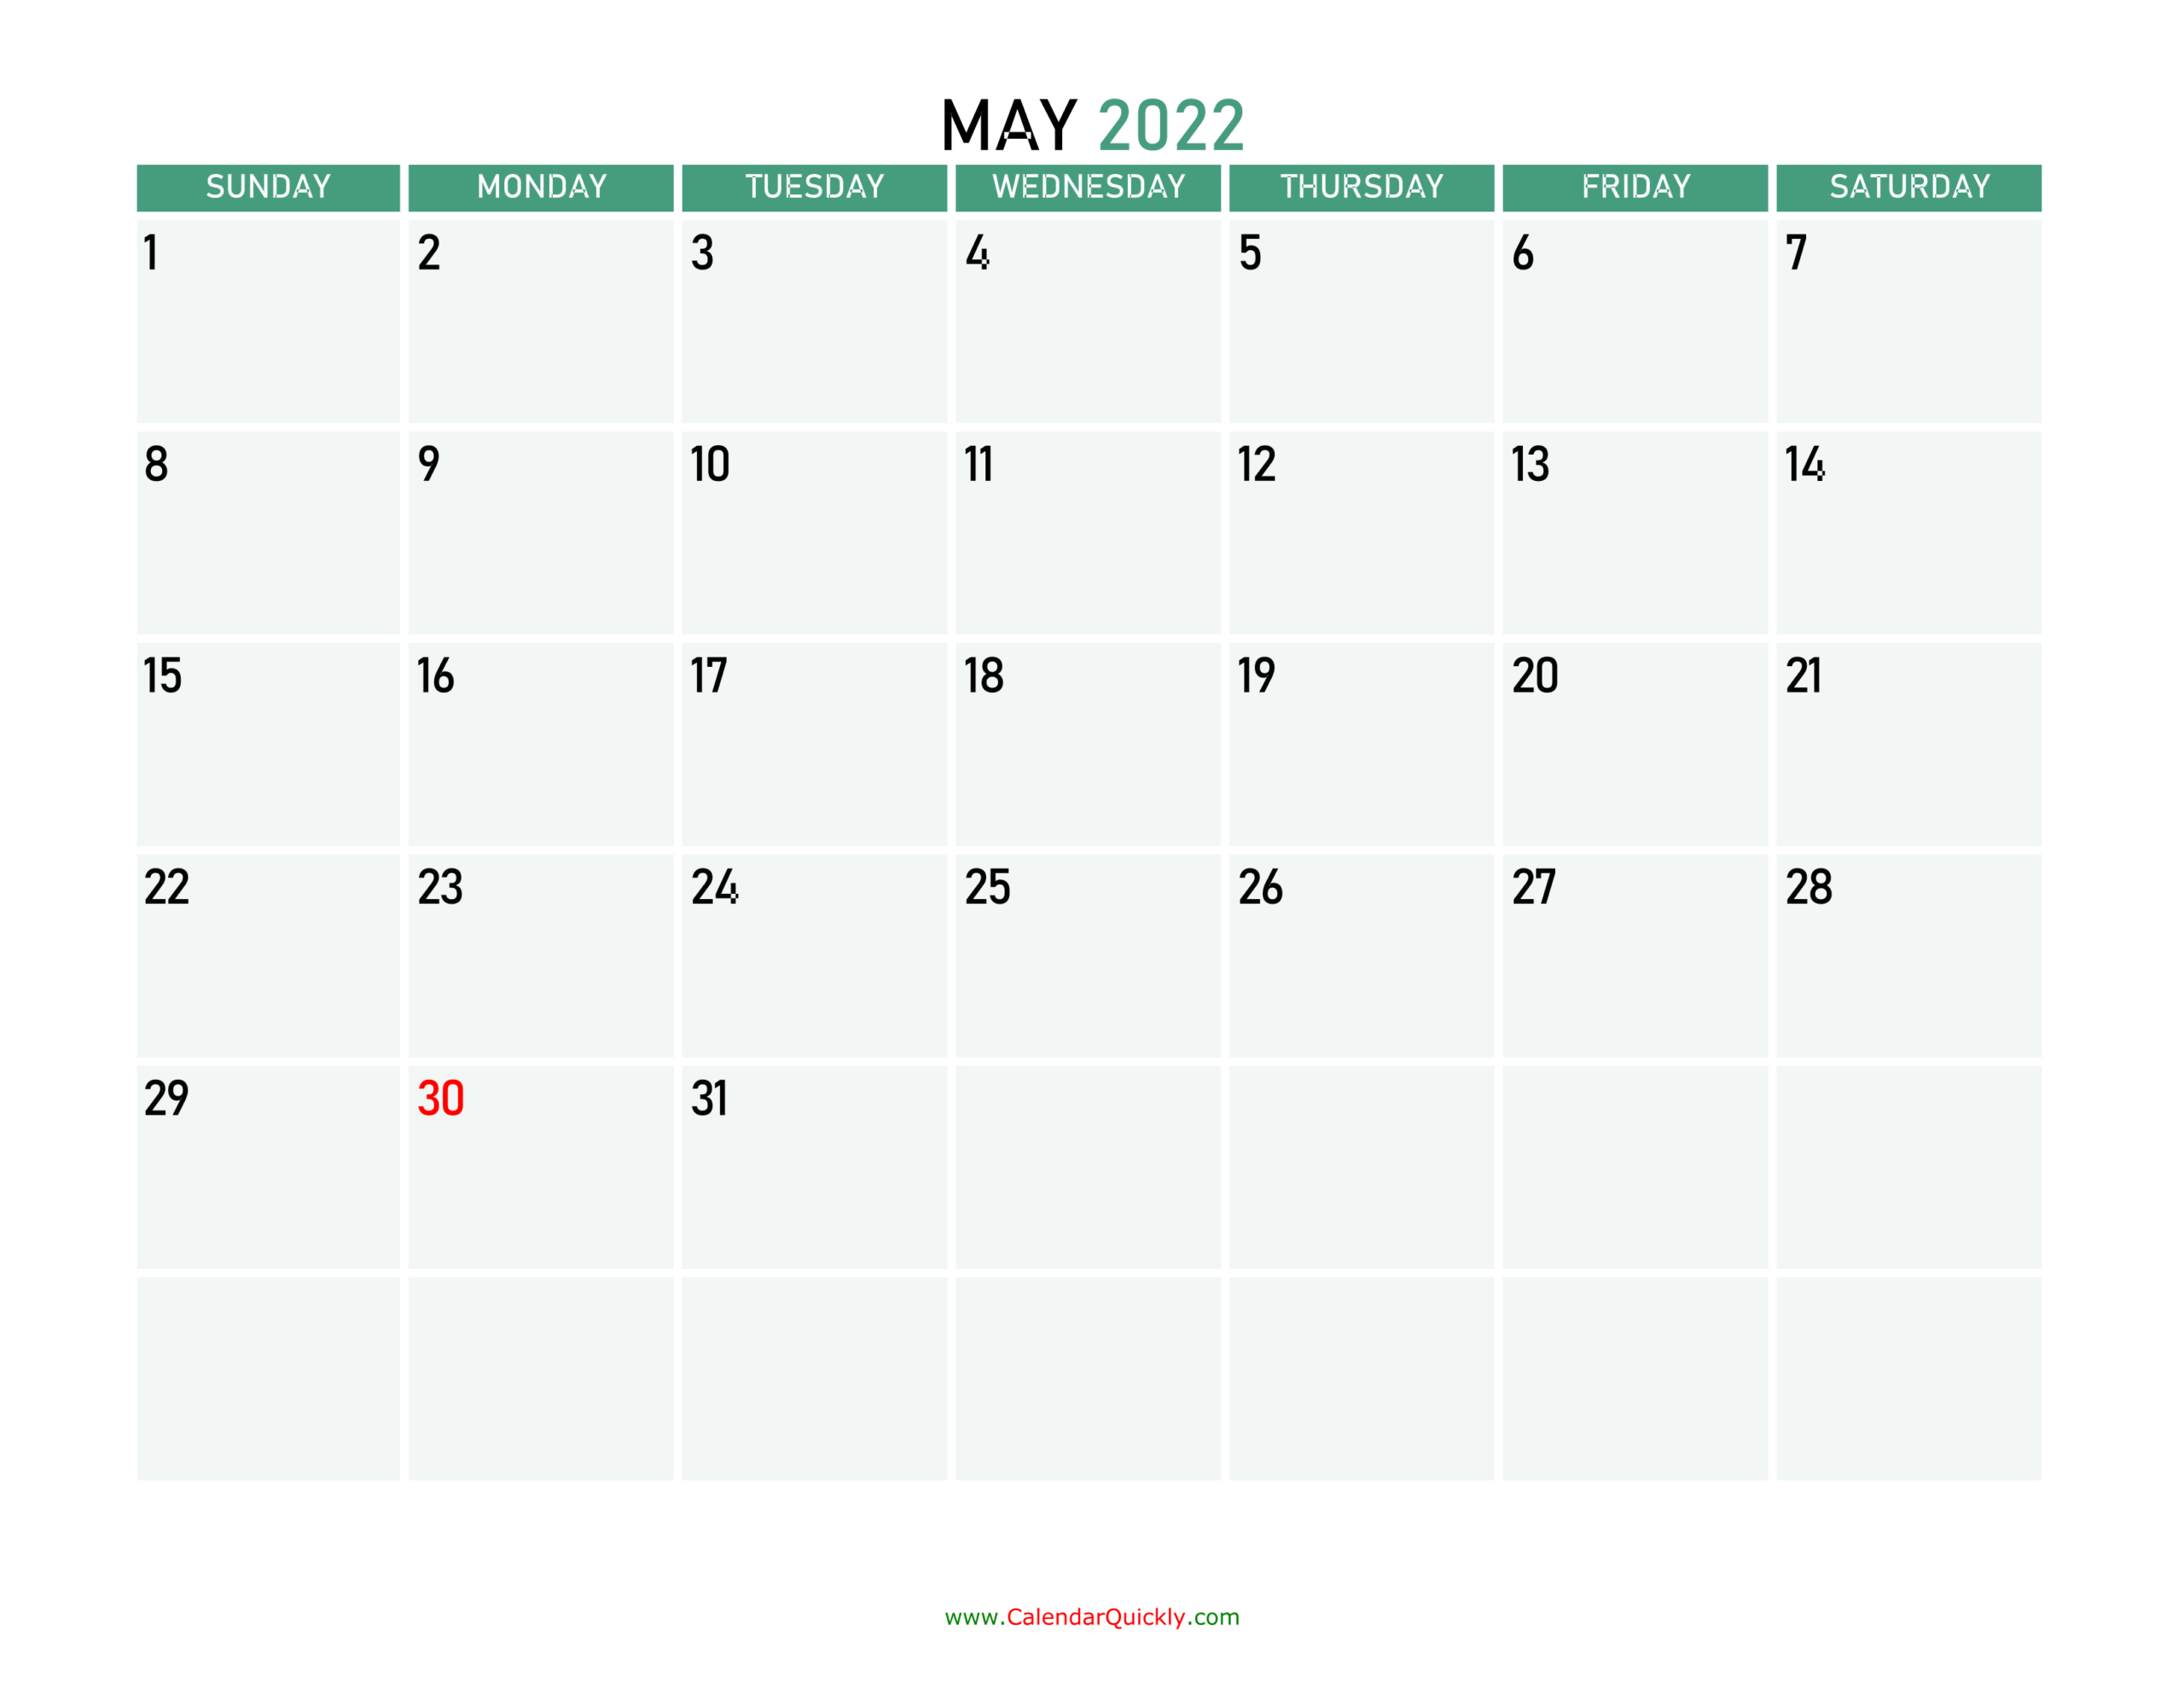 May 2022 Printable Calendar | Calendar Quickly  Calendar November 2022 To May 2022